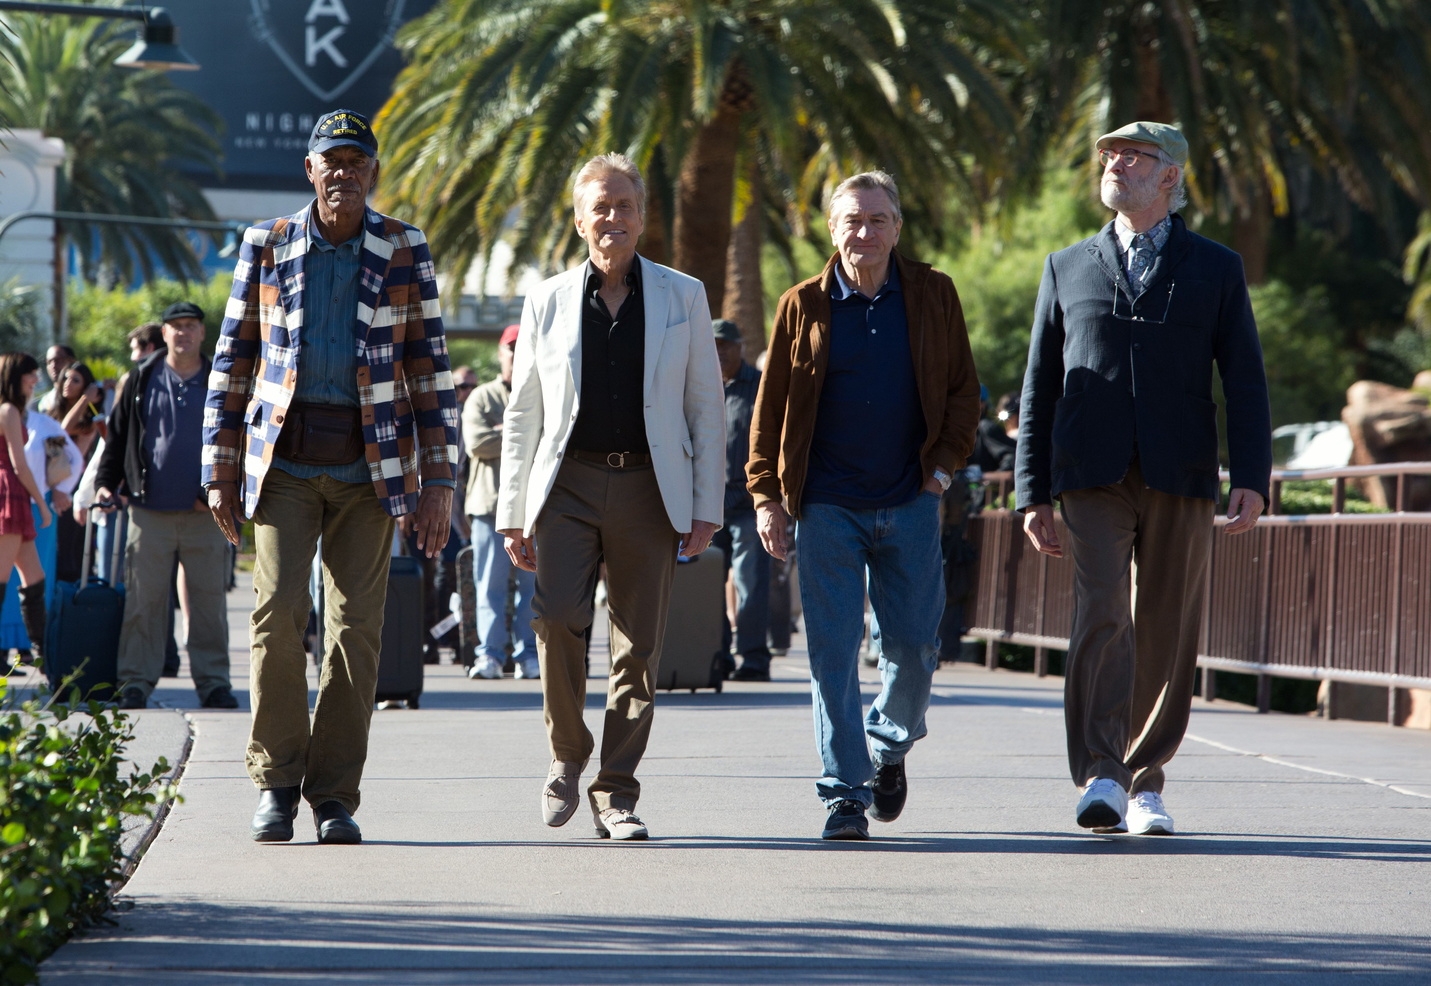 Last Vegas / Morgan Freeman / Michael Douglas / Robert De Niro / Kevin Kline